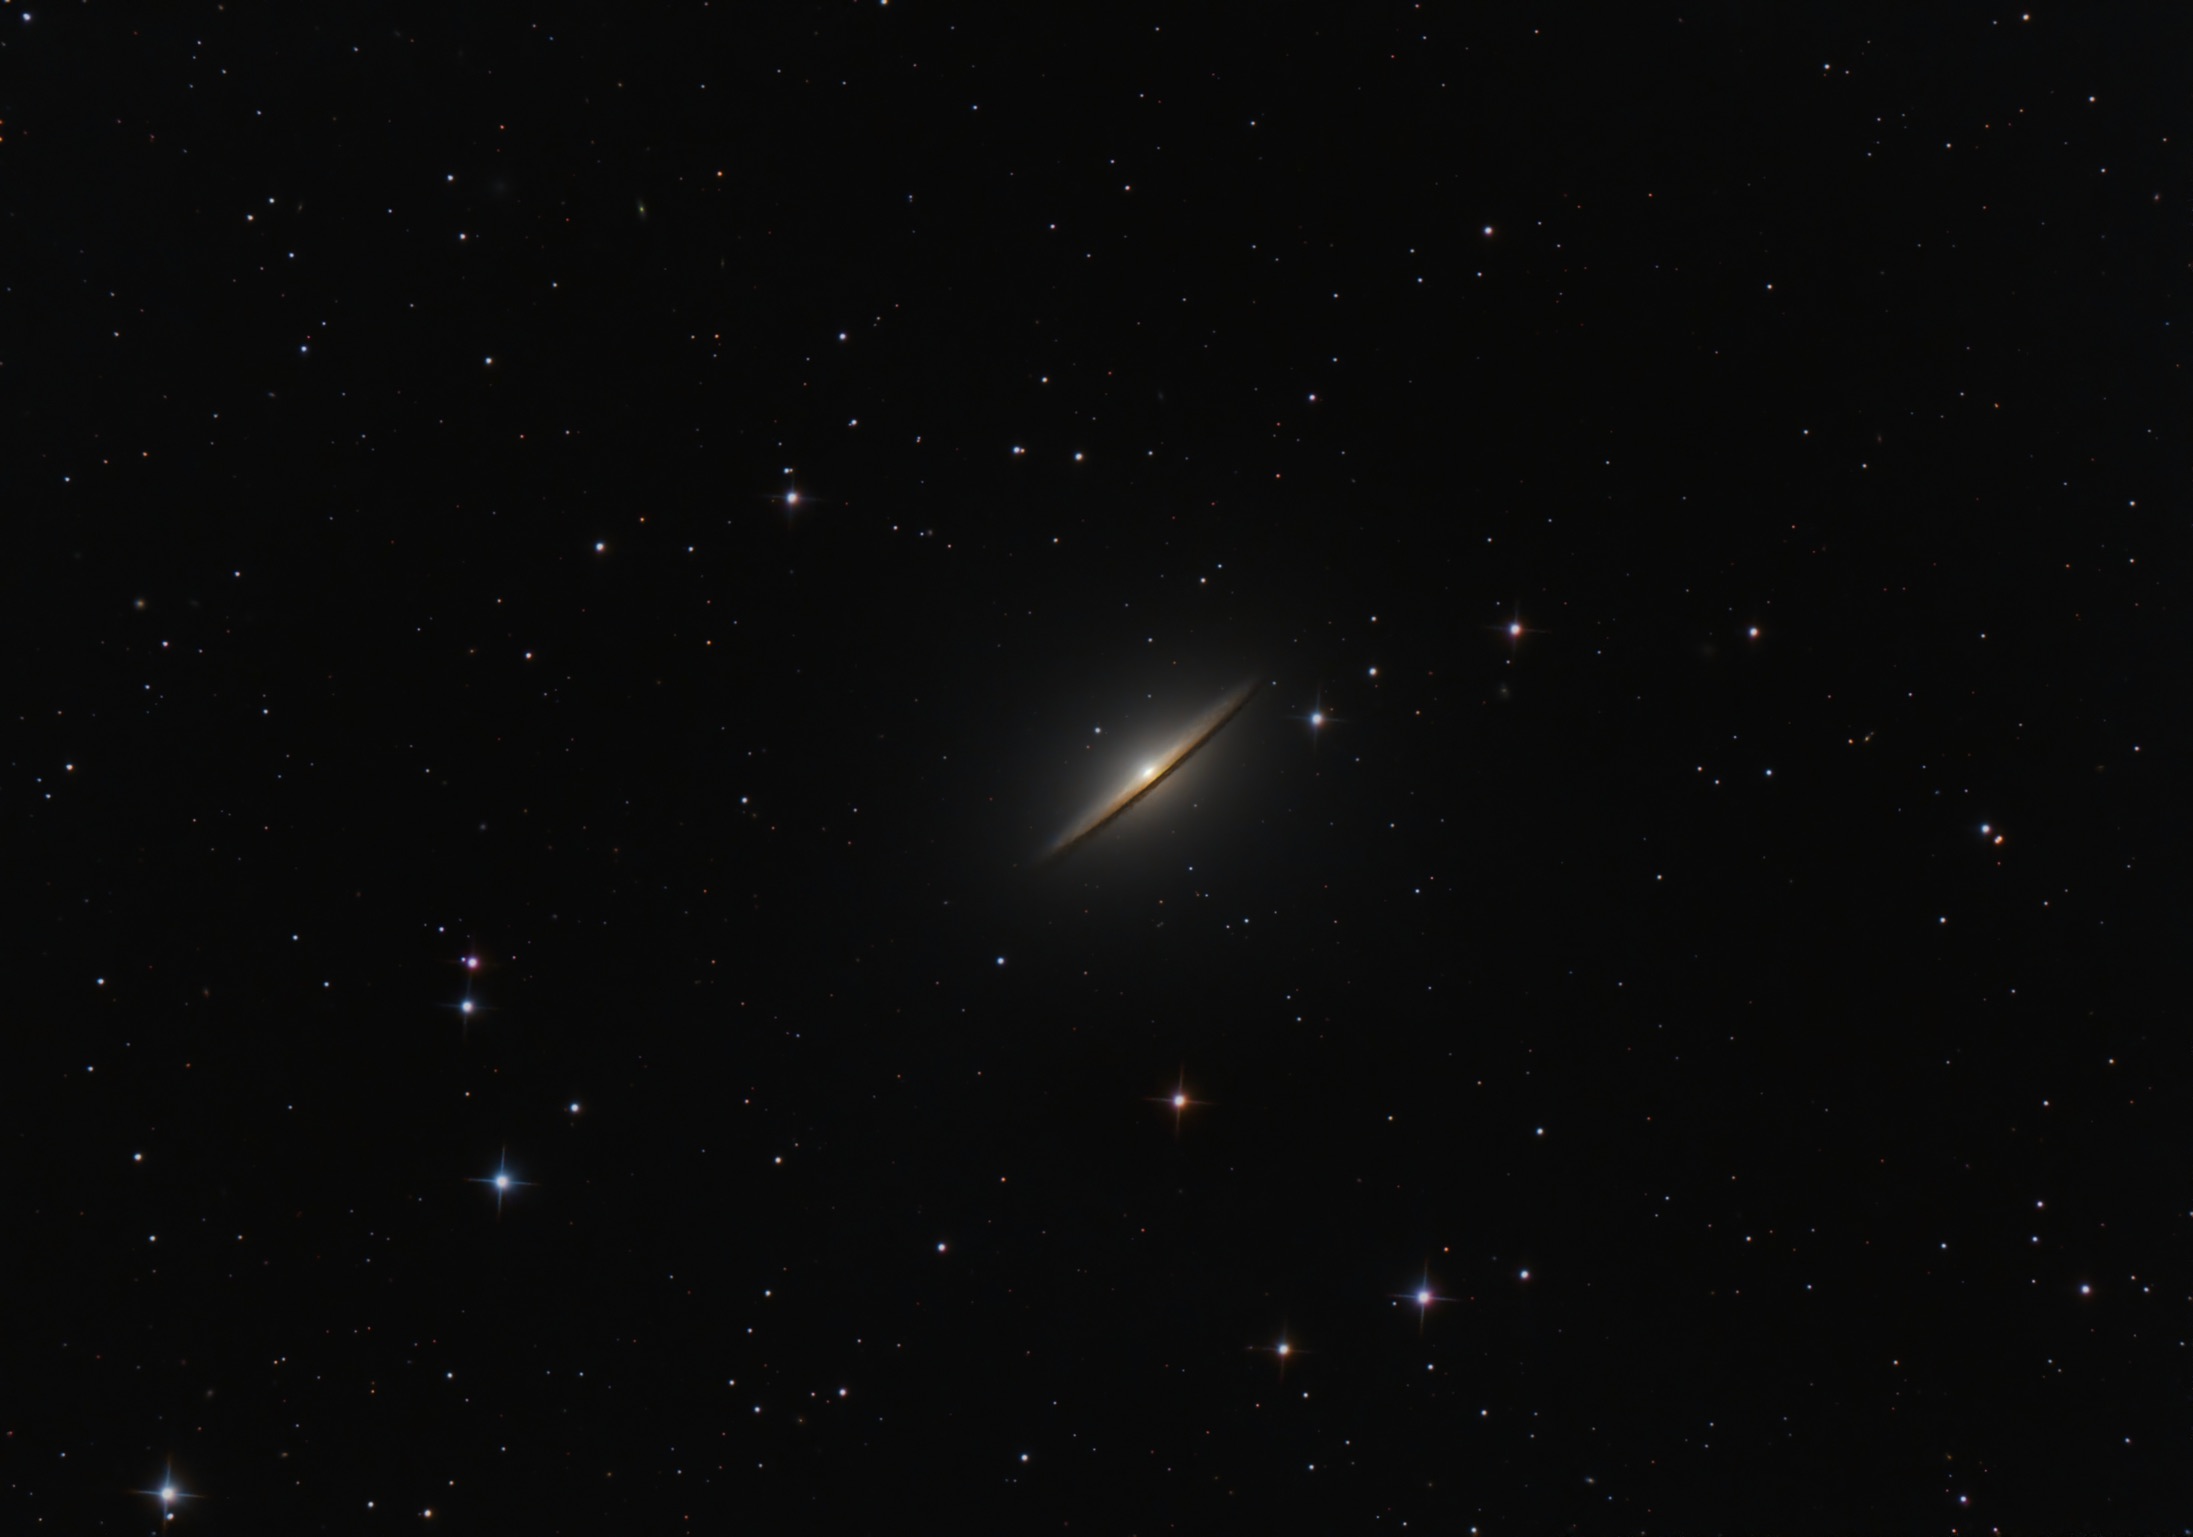 Voici la magnifique M104 (ou galaxie du Sombrero) dans la constellation de la Vierge non loin de l'étoile Spica.
C'était plus compliqué car le Lune presque pleine était juste au dessus, heureusement la cible est assez brillante (magnitude 8), j'ai même pu l'observer la même nuit aux Jumelles (10x42) et la photographier juste à l'appareil photo (voir photo suivante)
Télescope RC8 203/1624, caméra ASI2600MC duo, monture ZWO AM5 - 104x120s (3h30)
Traitement : Philippe Bizien
